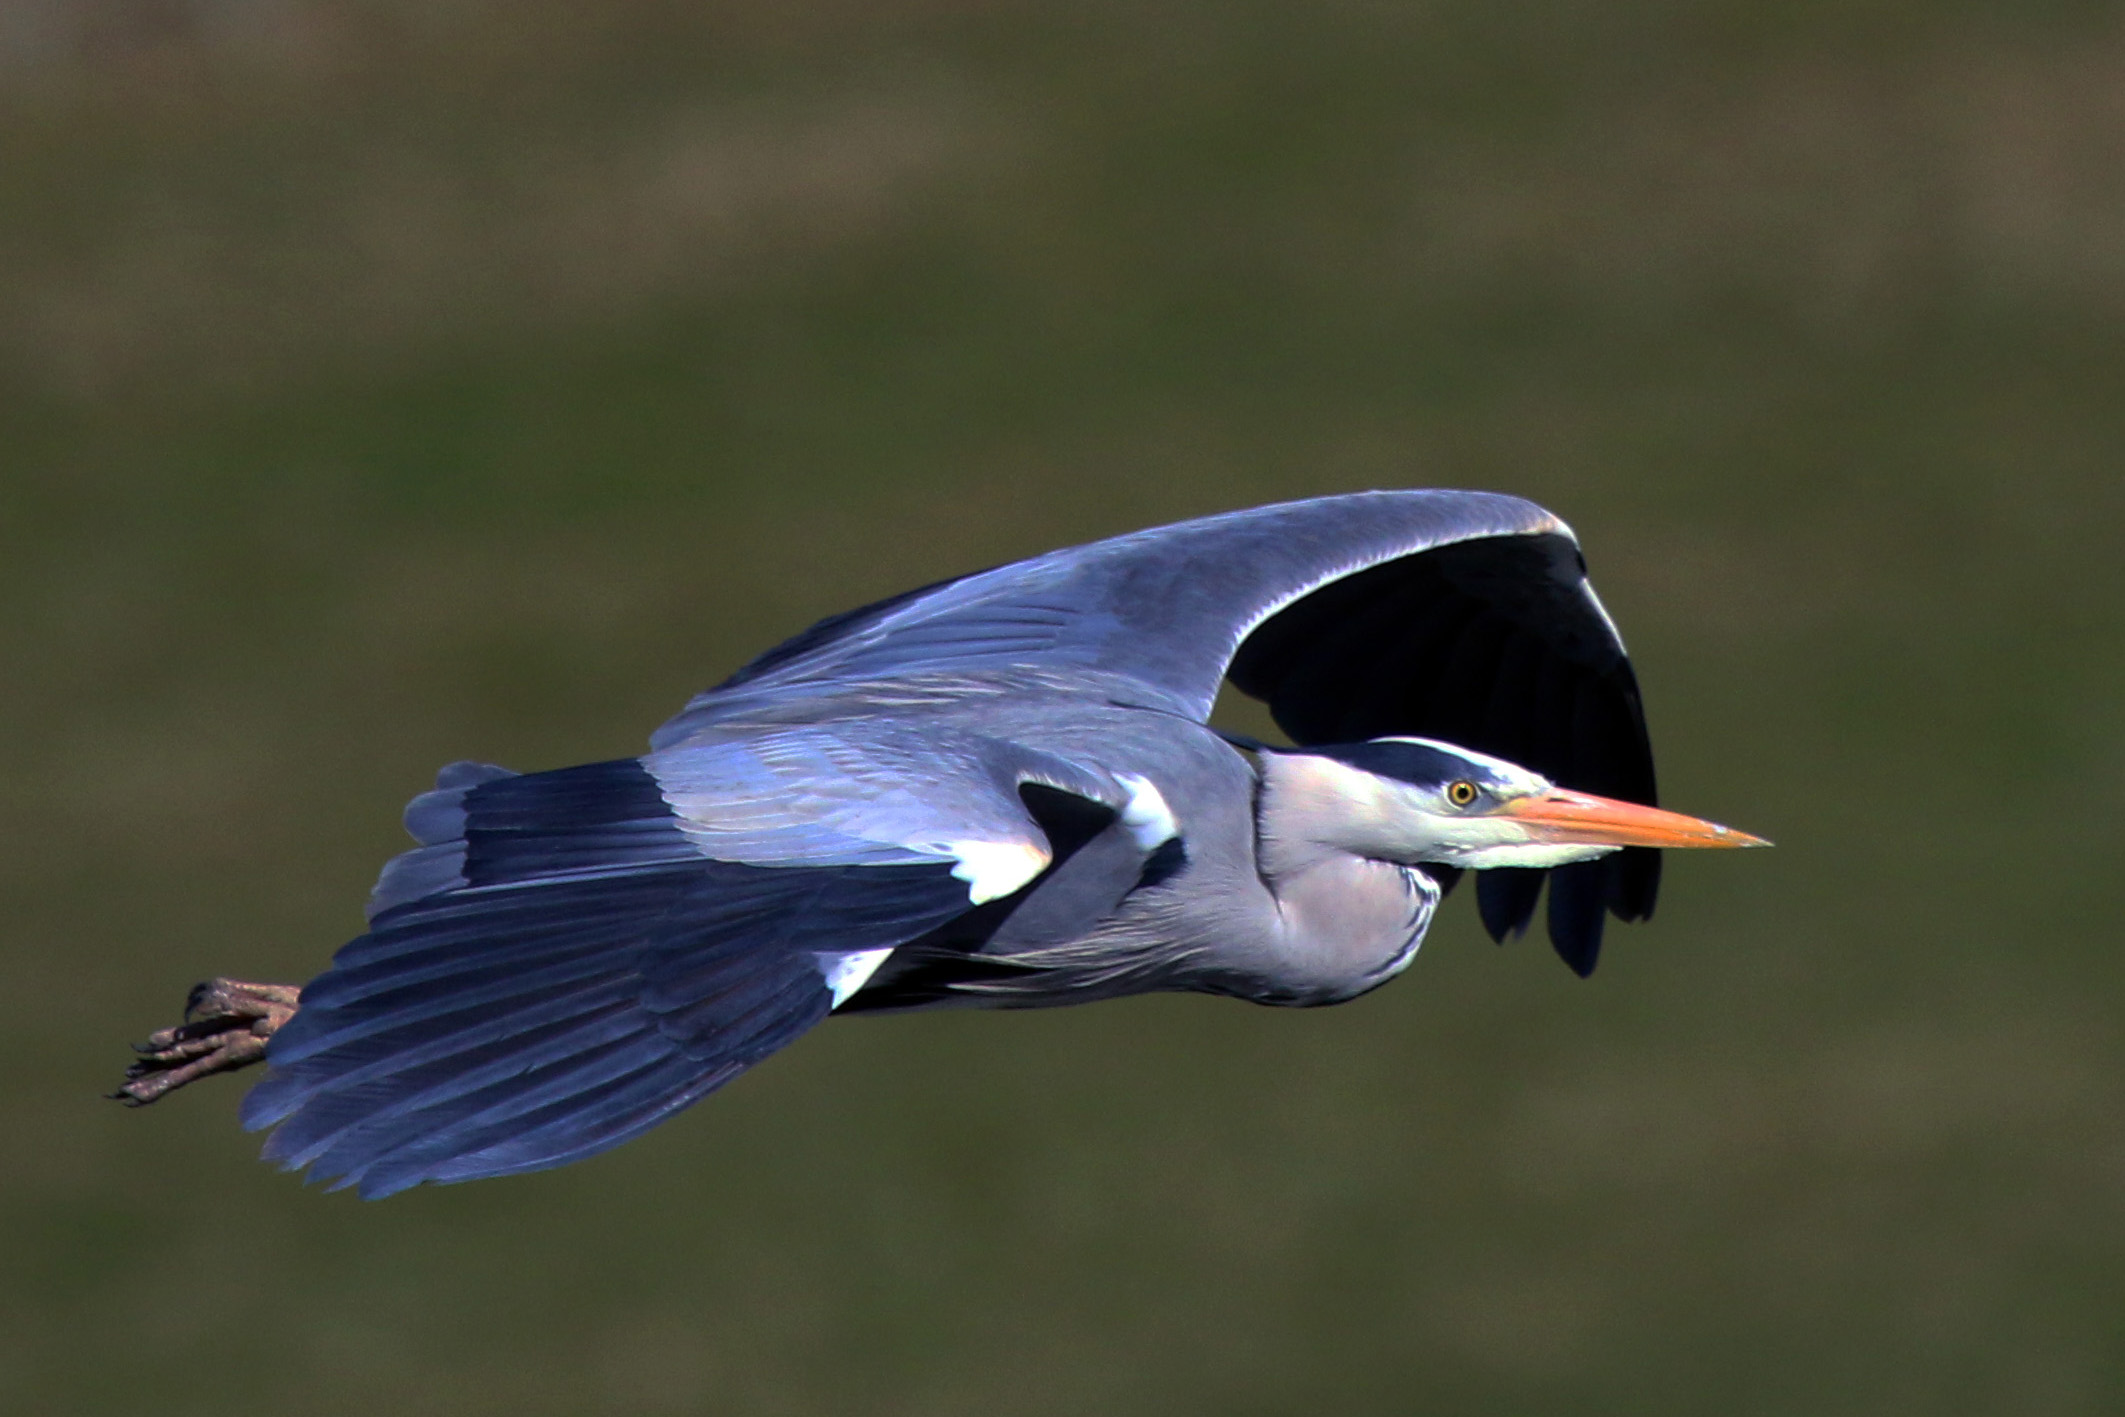 Grey heron in flight (ardea cinerea)